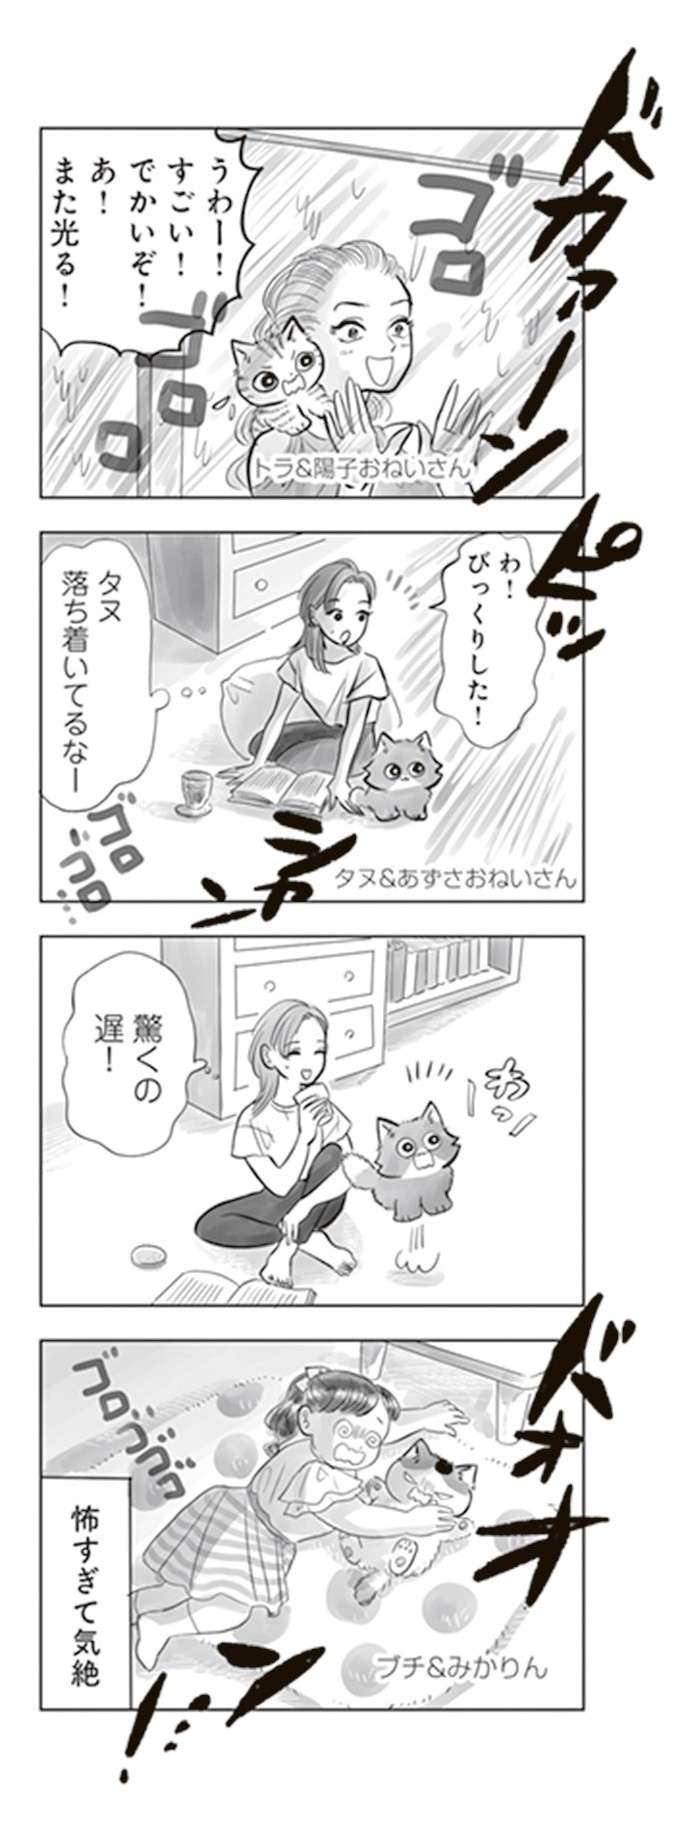 猫と雷。猫の性格によってリアクションは違うようで／トラと陽子 tora_yoko7-4.jpg